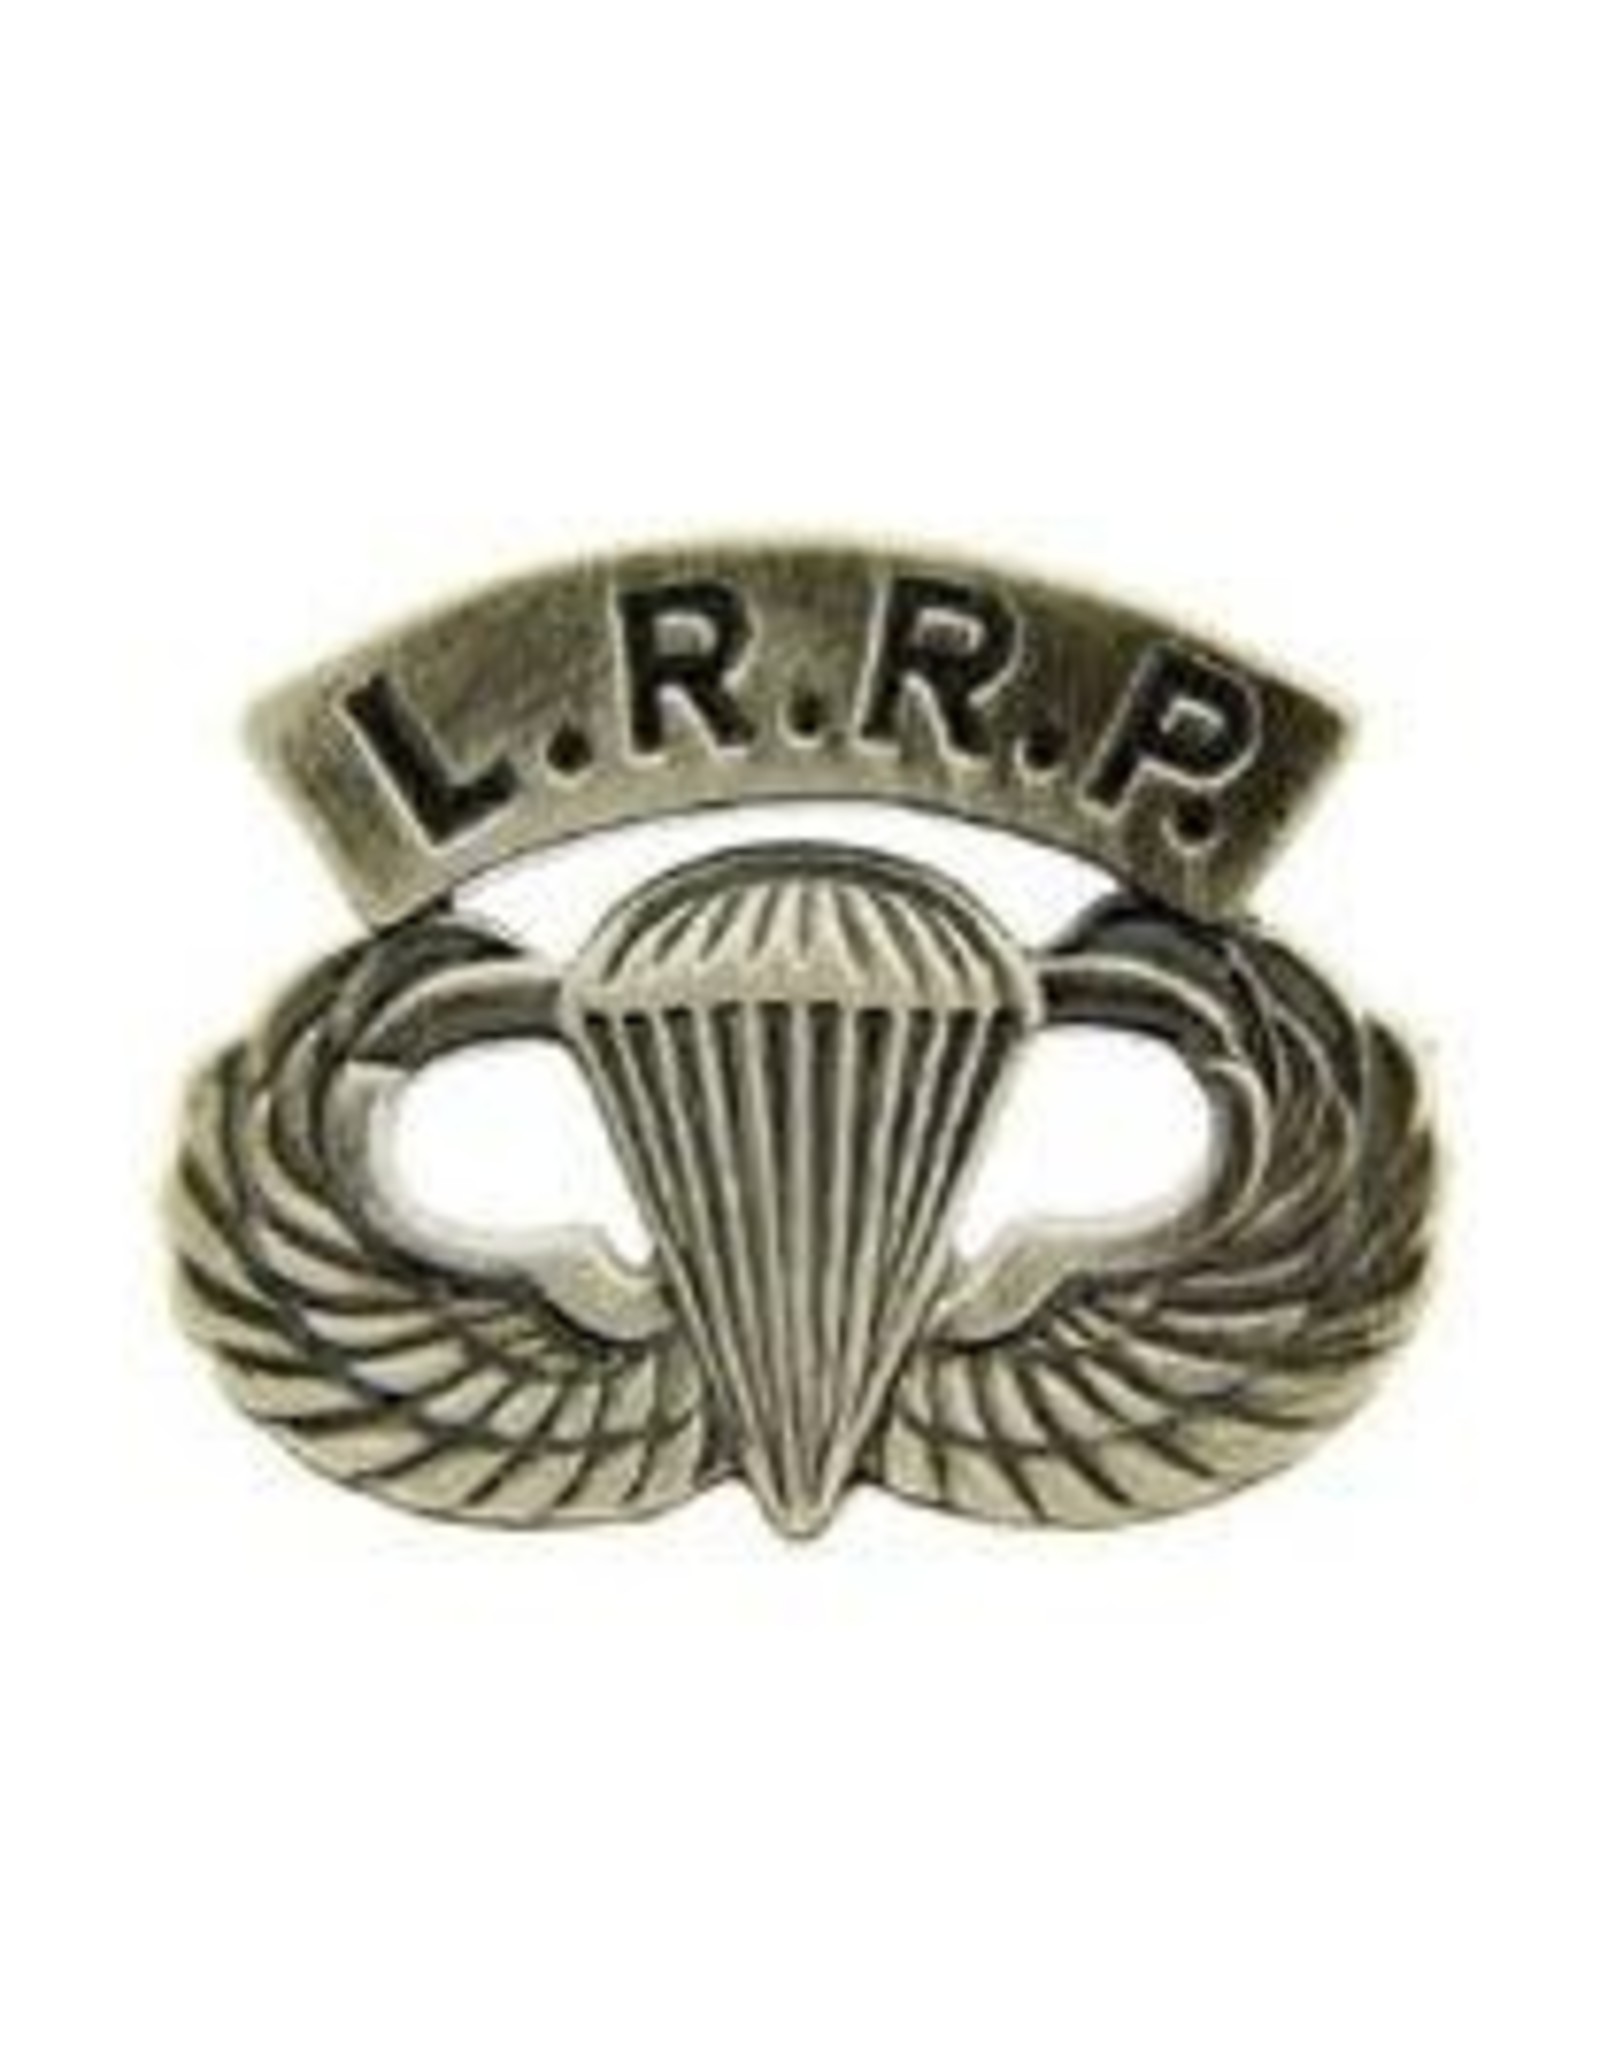 Pin - Wing - Army Para LRRP Pewter